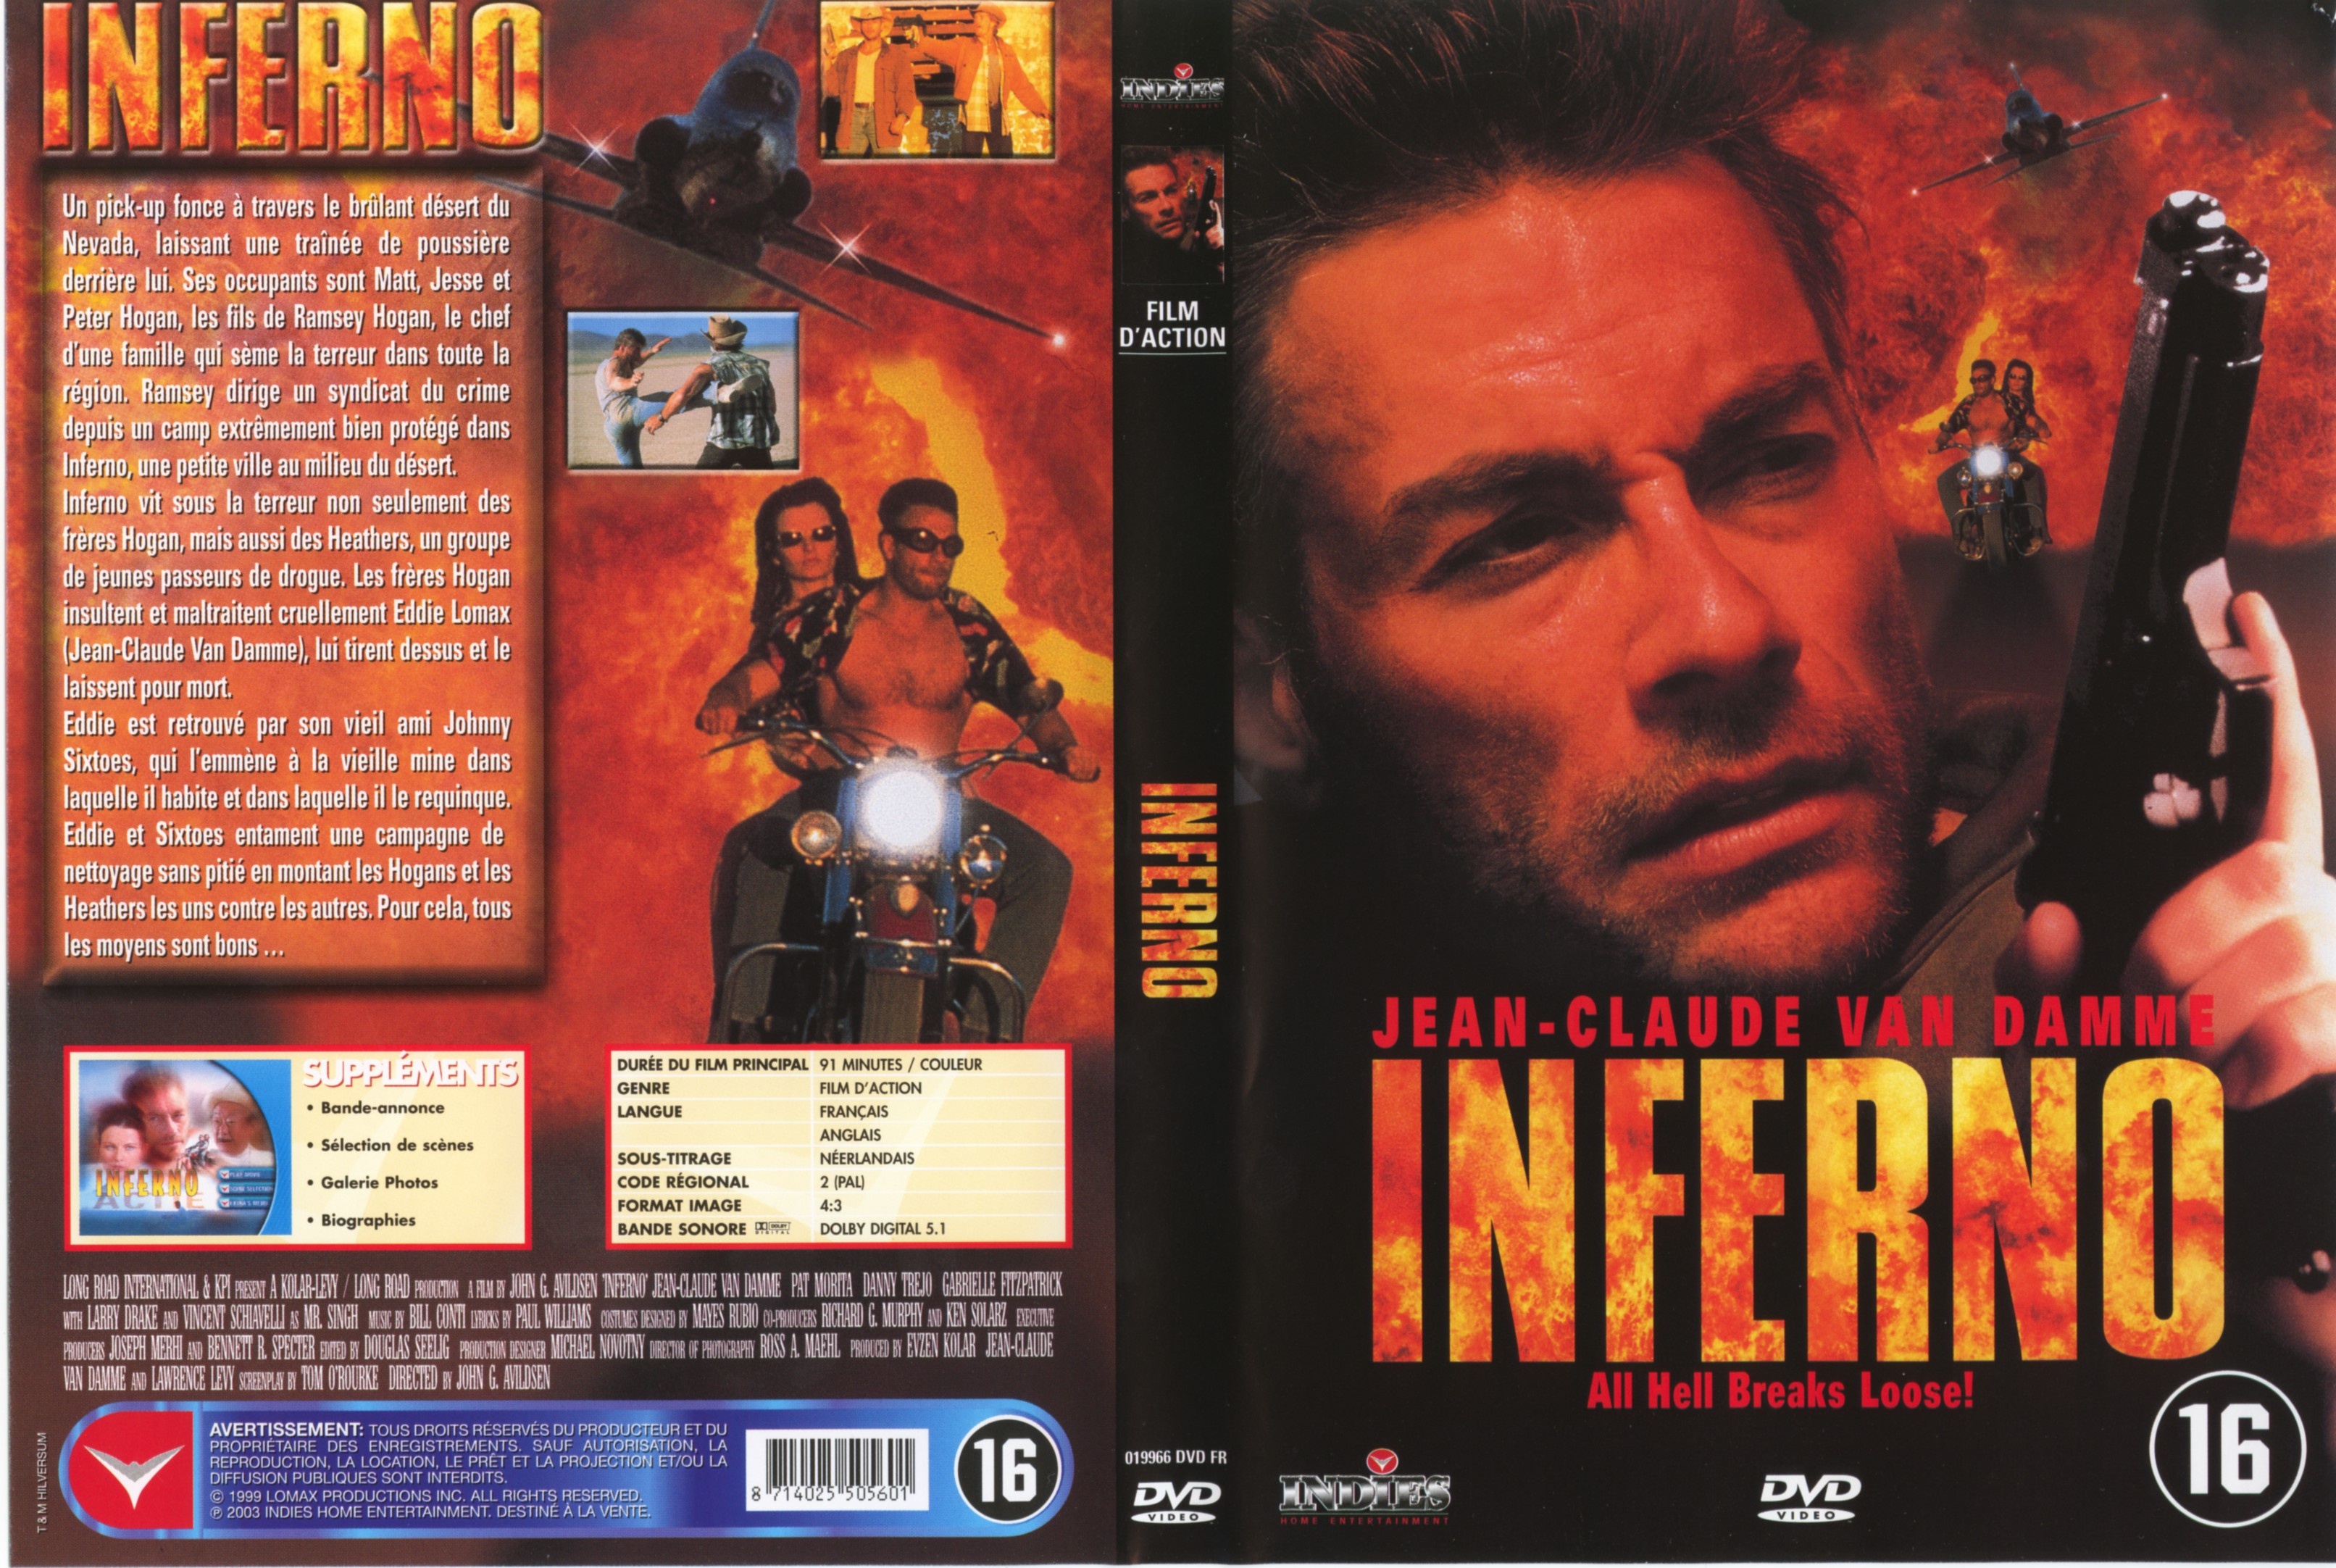 Jaquette DVD Inferno (Jean-Claude Van Damme) v2